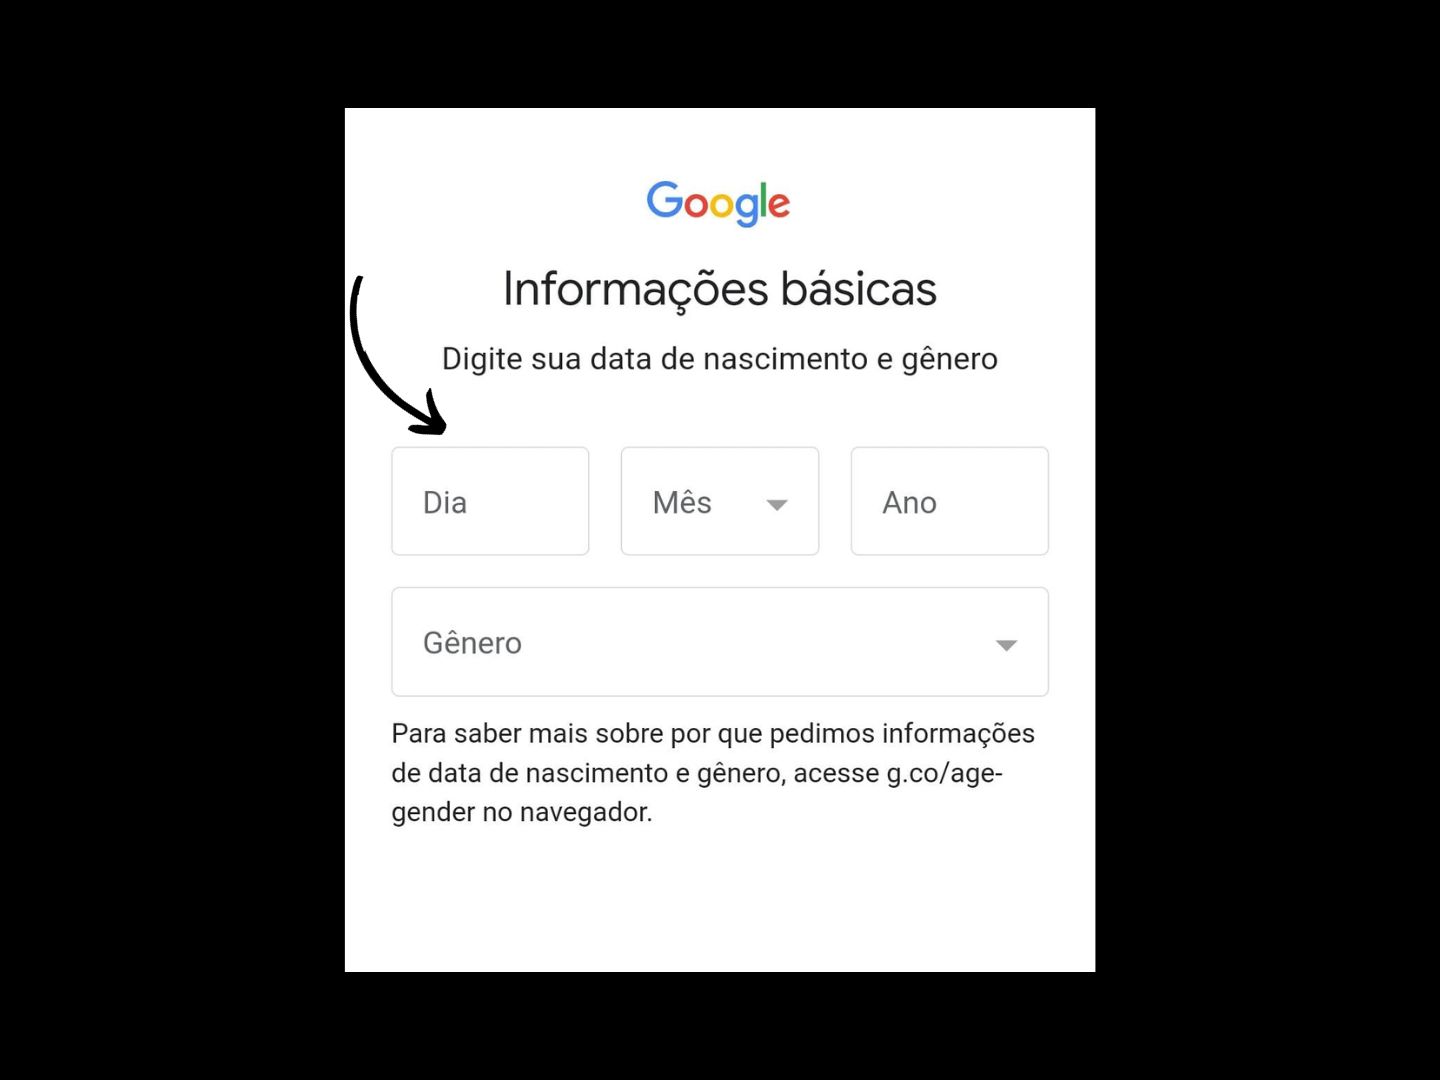 Imagem mostra onde você deve colocar sua data de nascimento e seu gênero para criar uma conta no Google